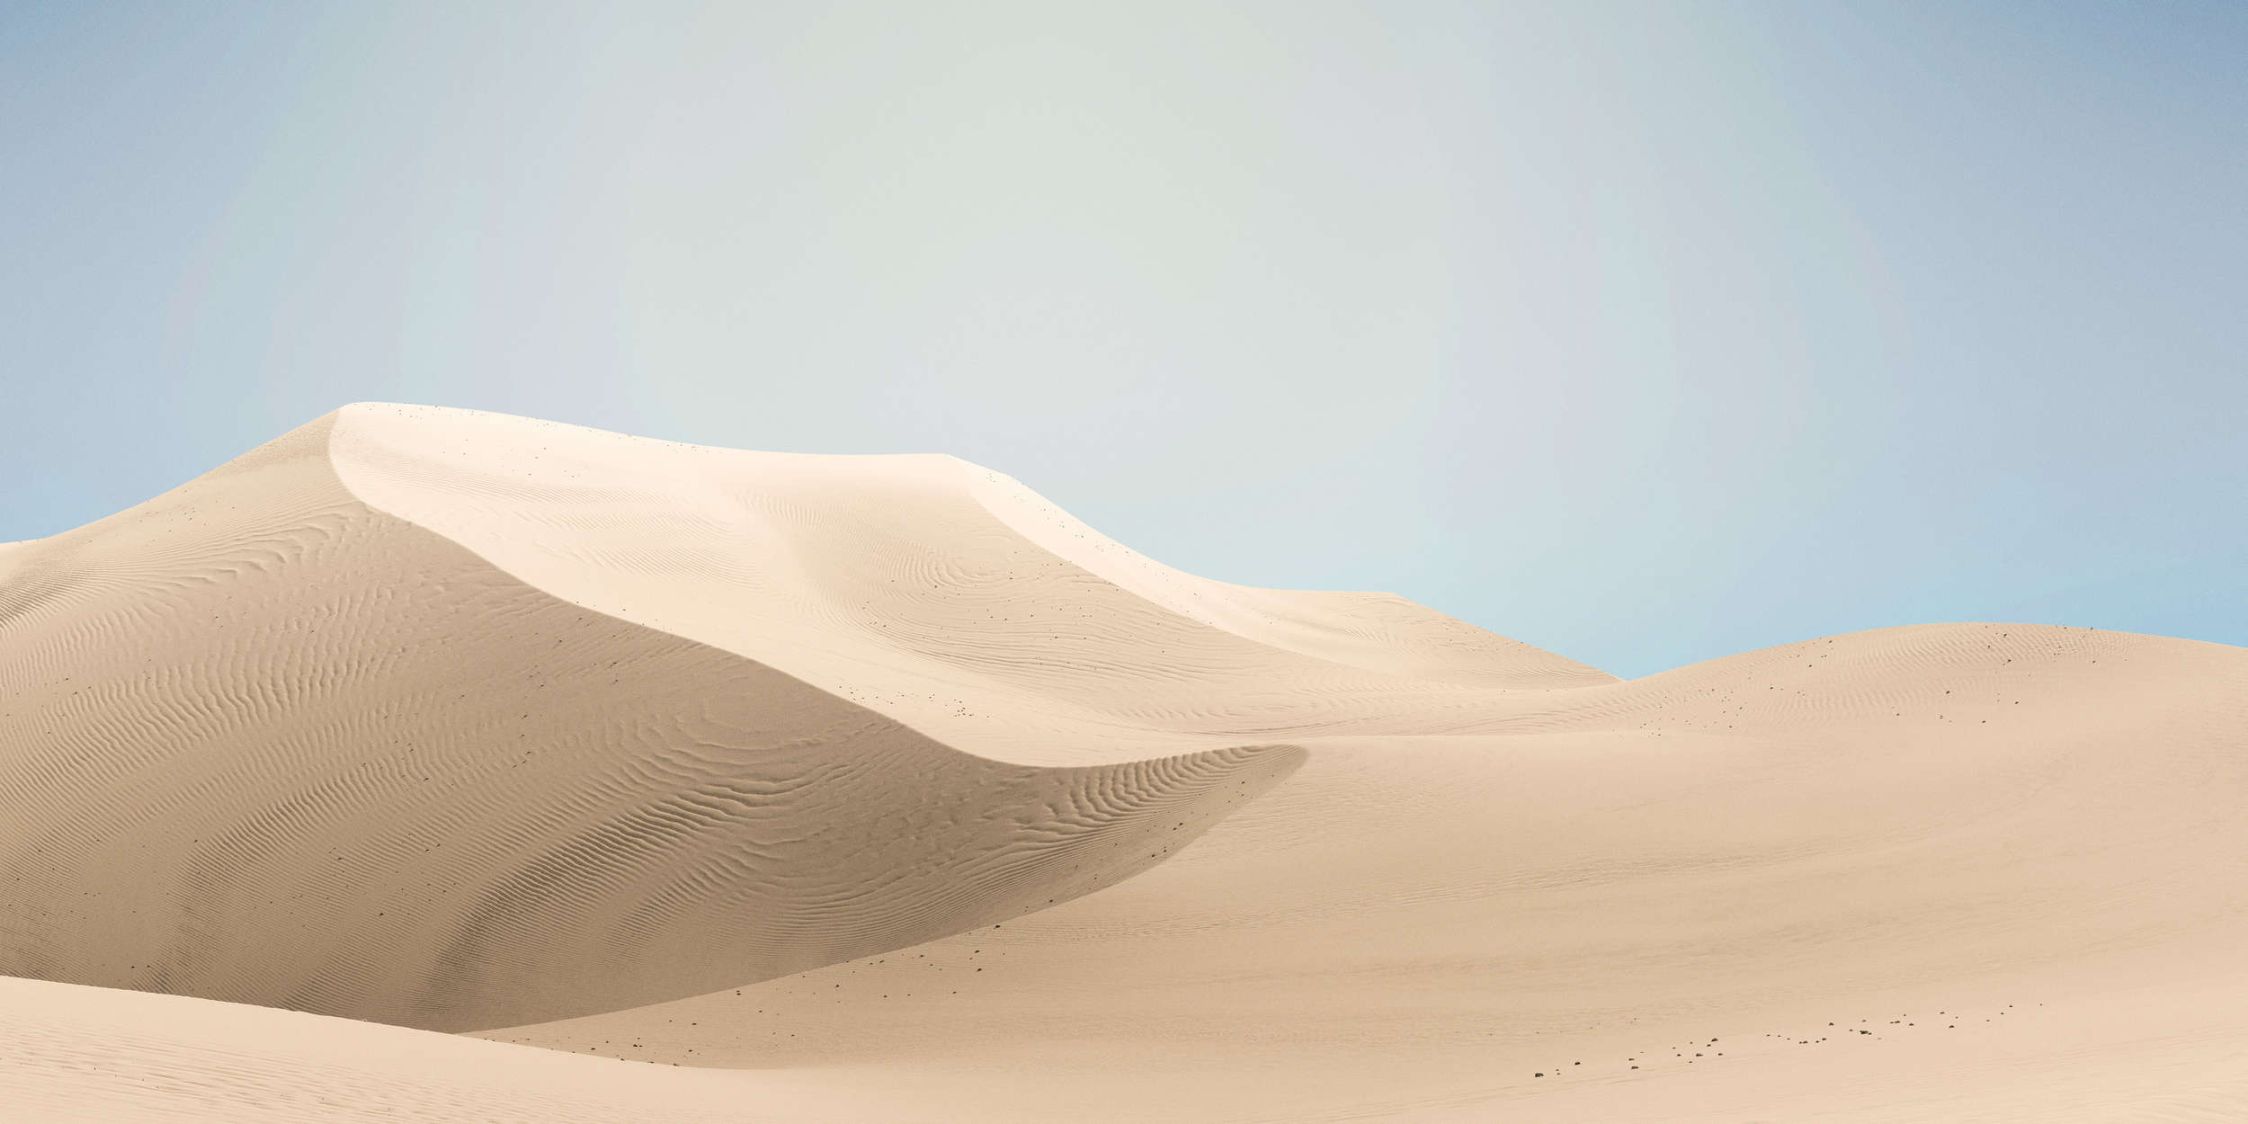             papier peint en papier panoramique »dunes« - paysage désertique aux couleurs pastel - intissé lisse aux reflets légèrement nacrés
        